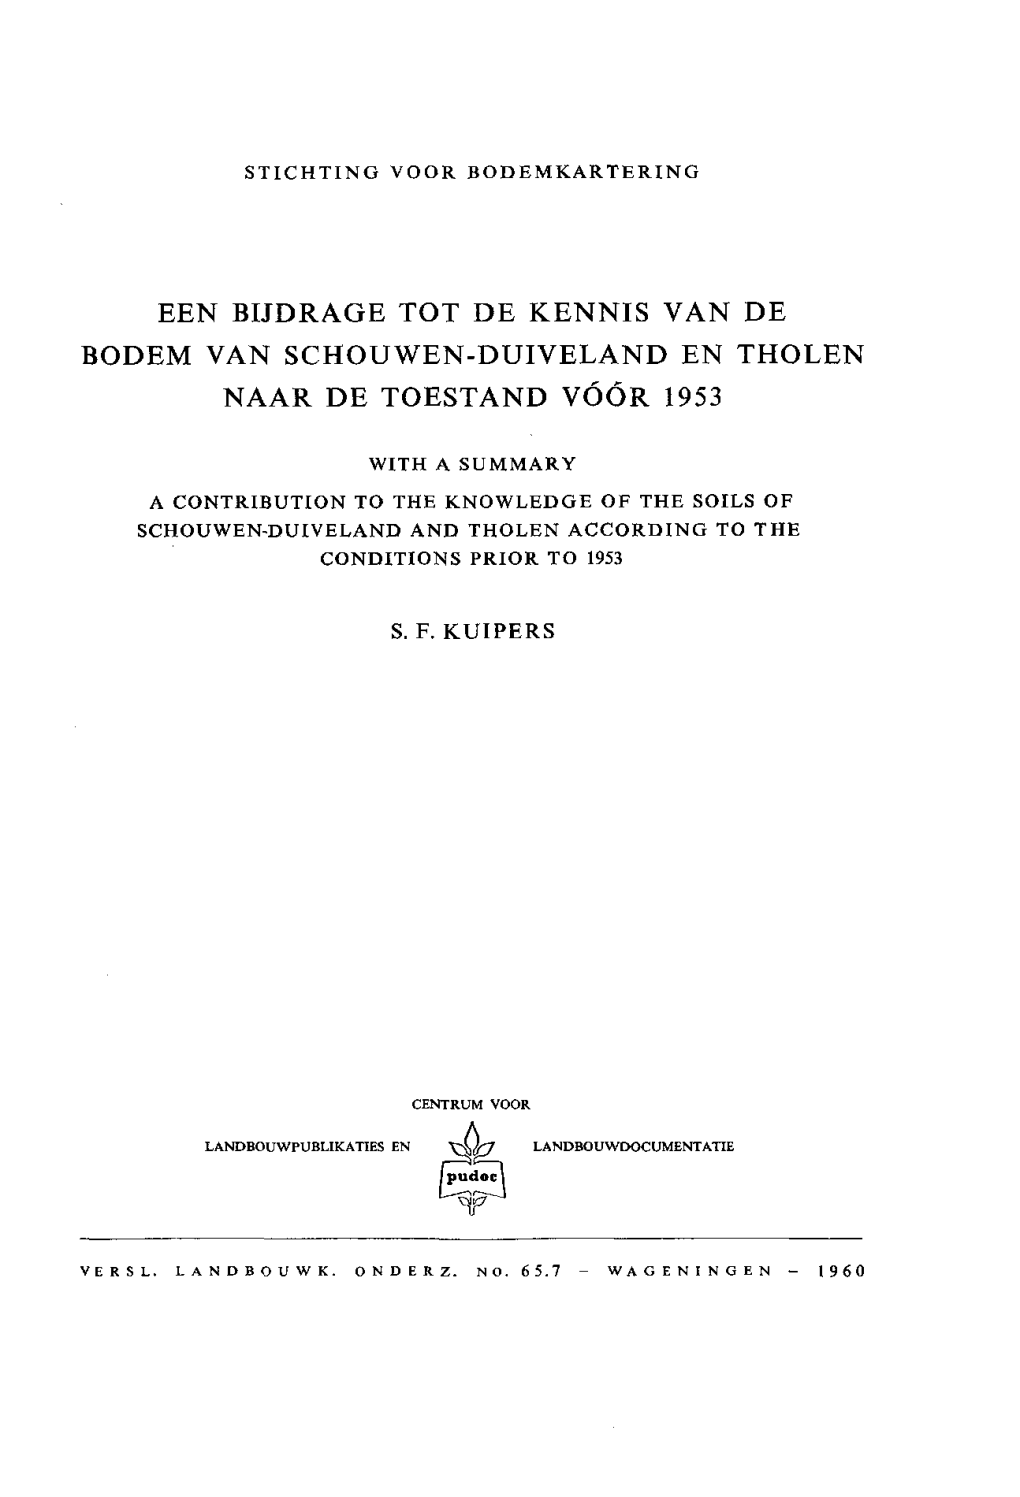 Een Bijdrage Tot De Kennis Van De Bodem Van Schouwen-Duiveland En Tholen Naar De Toestand Vóór 1953